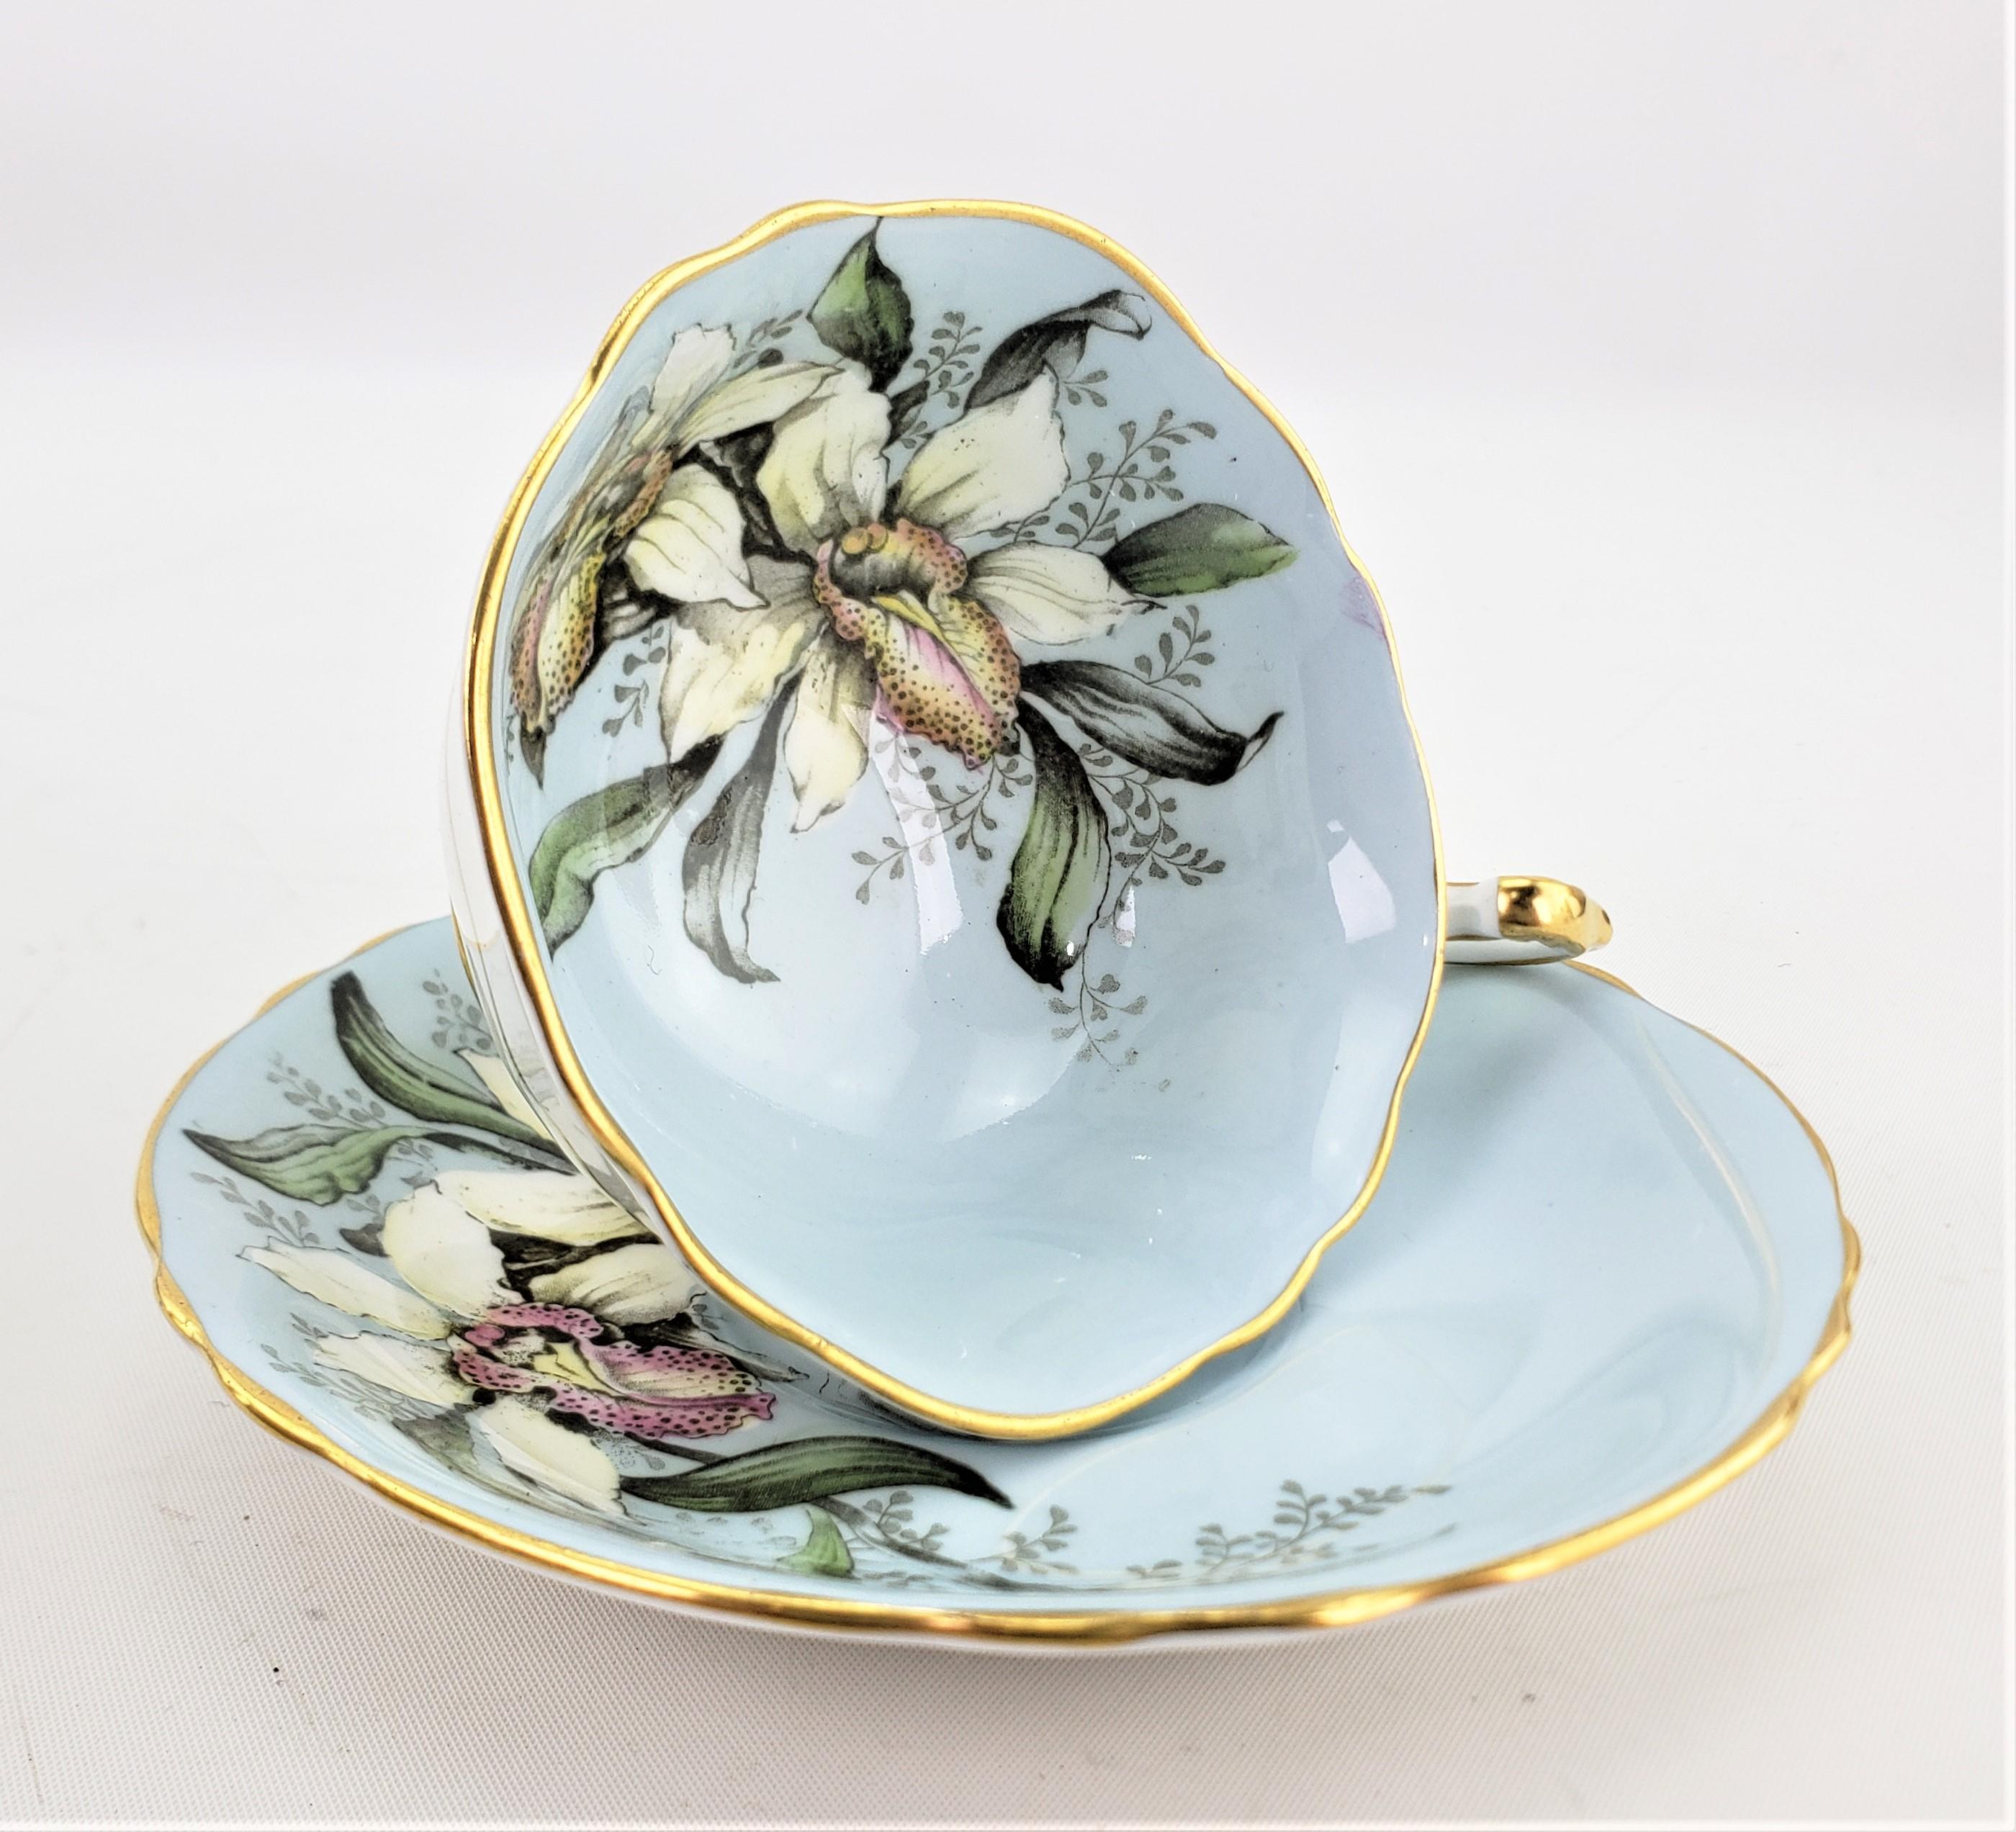 Dieses Set aus Teetasse und Untertasse wurde um 1960 von der renommierten englischen Porzellanfabrik Paragon hergestellt. Das Set hat einen rotkehlchenblauen Grund mit einem großen Blumenmuster auf der Innenseite der Tasse, das sich auch auf der